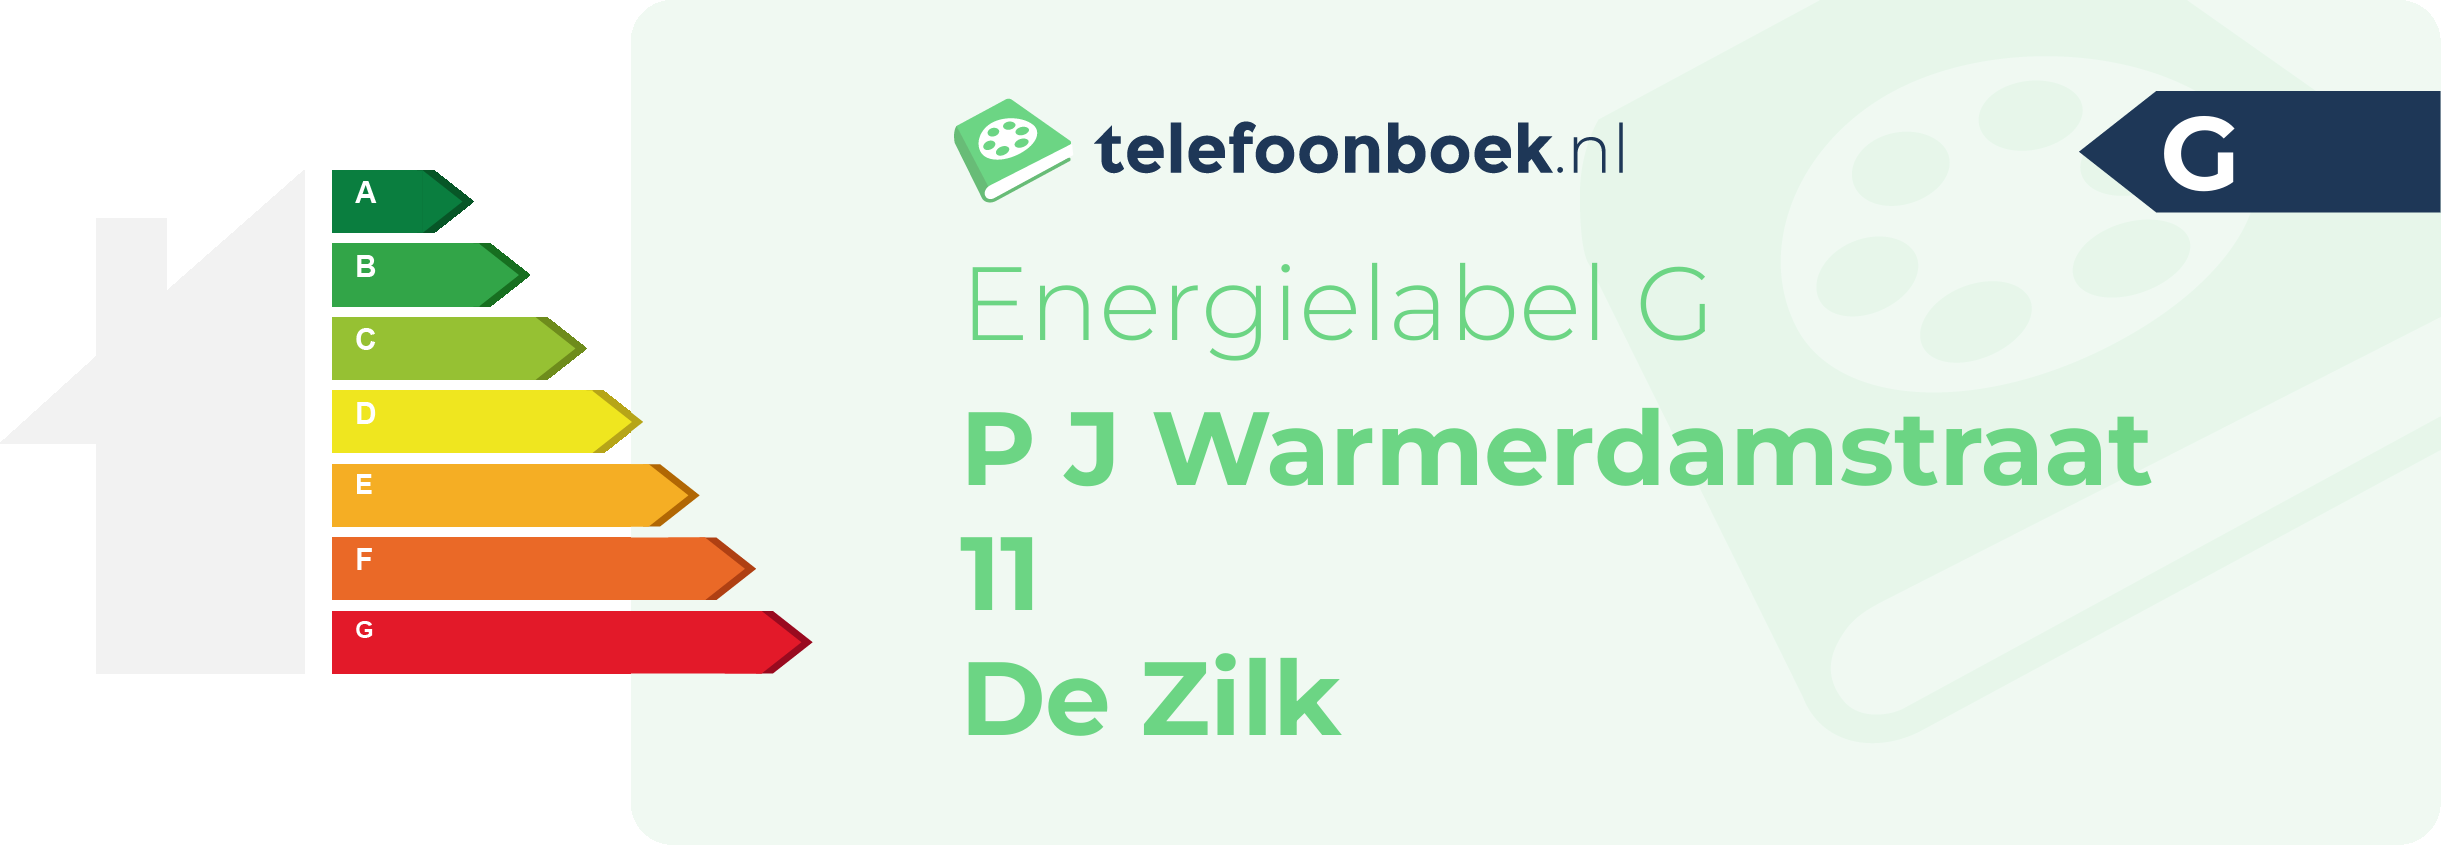 Energielabel P J Warmerdamstraat 11 De Zilk